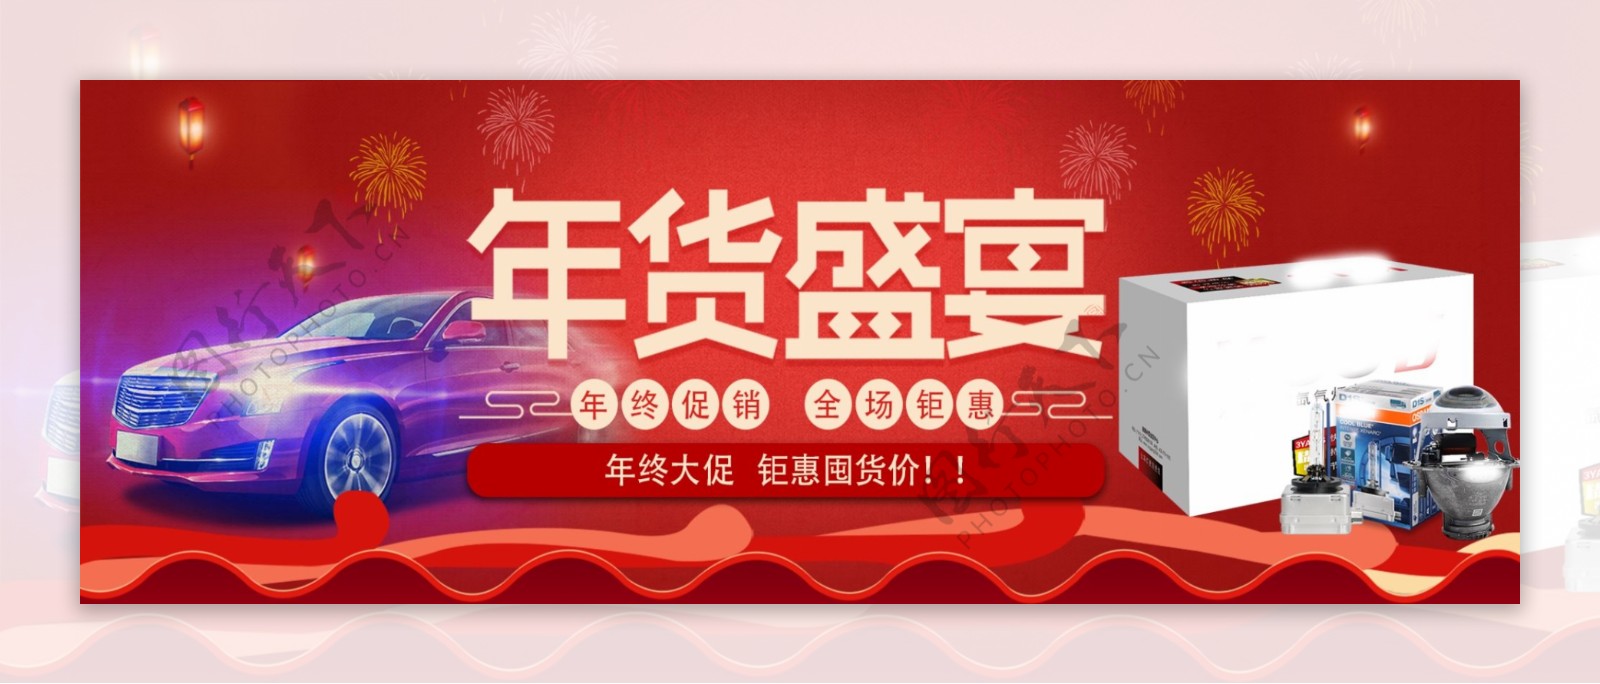 淘宝天猫红色喜庆年货节促销海报